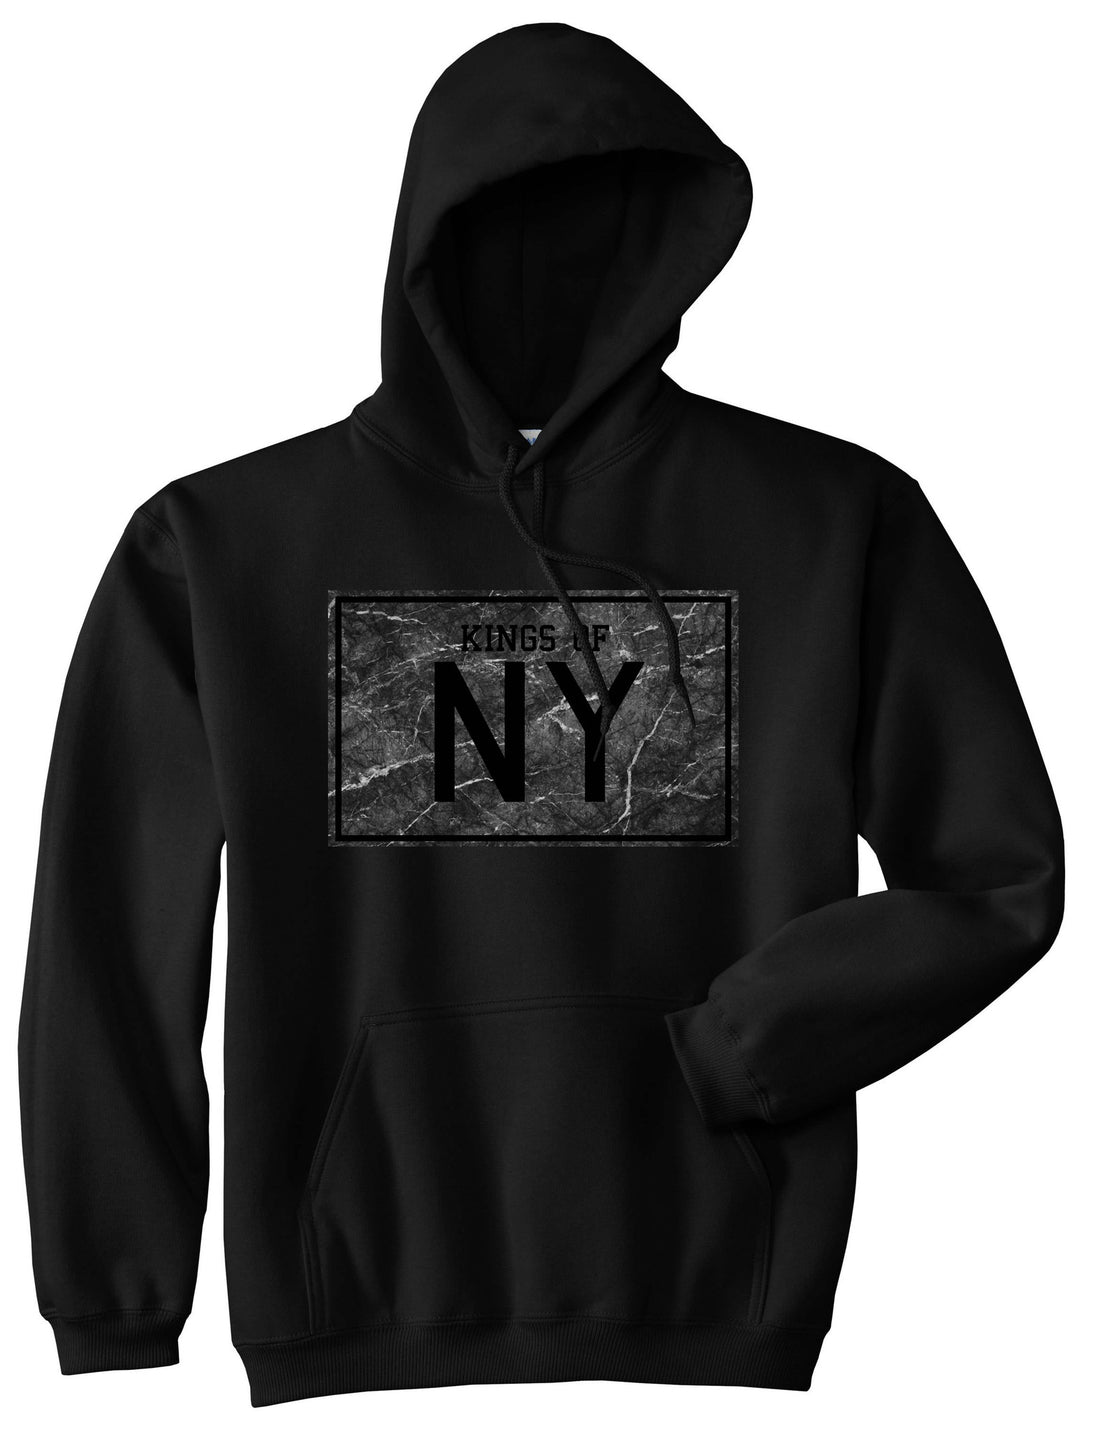 Granite NY Logo Print Pullover Hoodie Hoody in Black by Kings Of NY